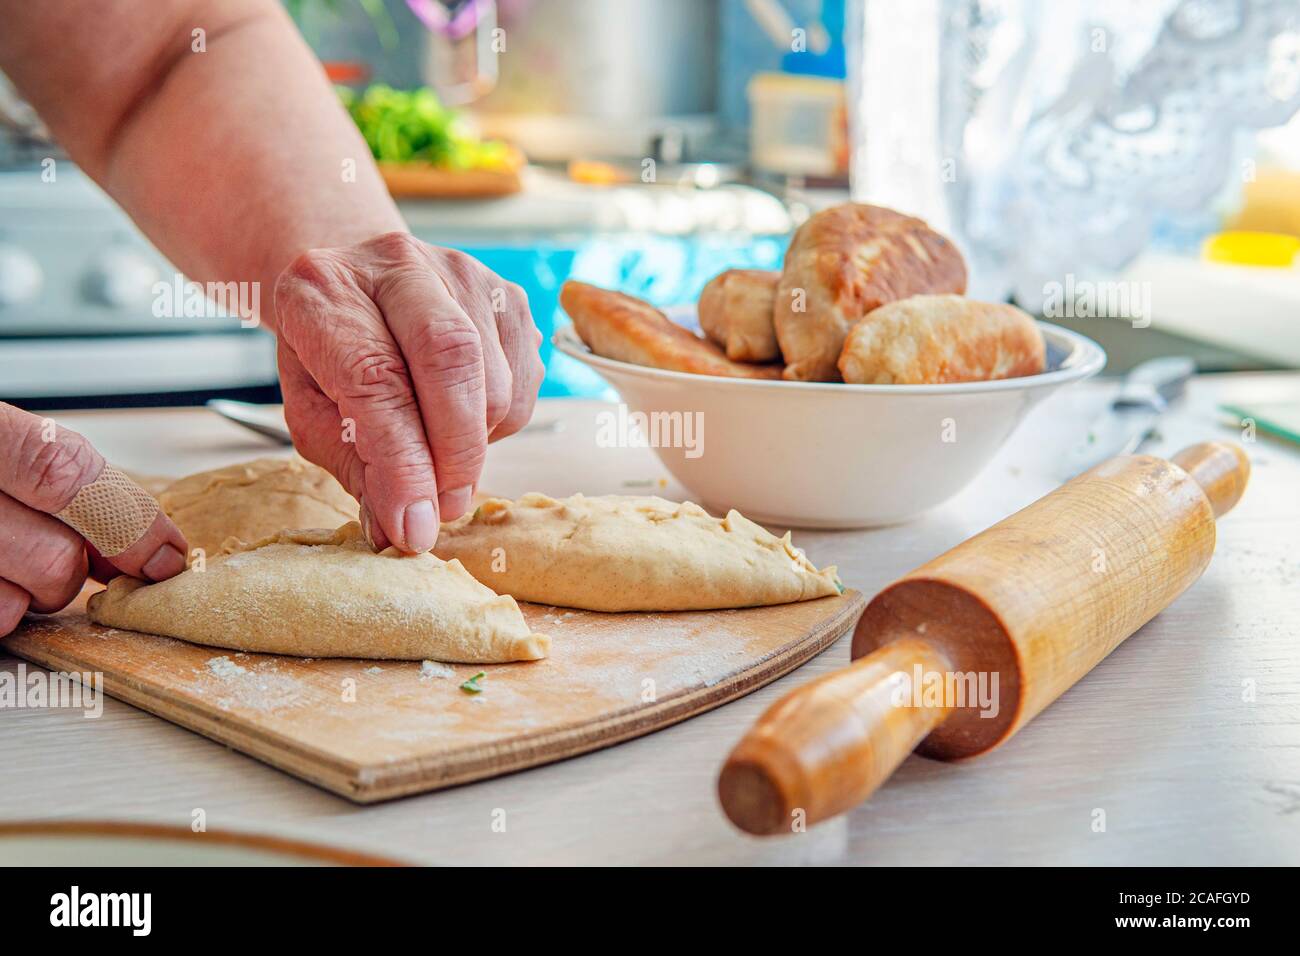 Grand-mère est dans la cuisine cuisson des tartes. Boulanger femme cuisant du pain, gros plan sur une table en bois. Concept de pâtisserie, produits de pâtisserie, cuisine avec amour Banque D'Images